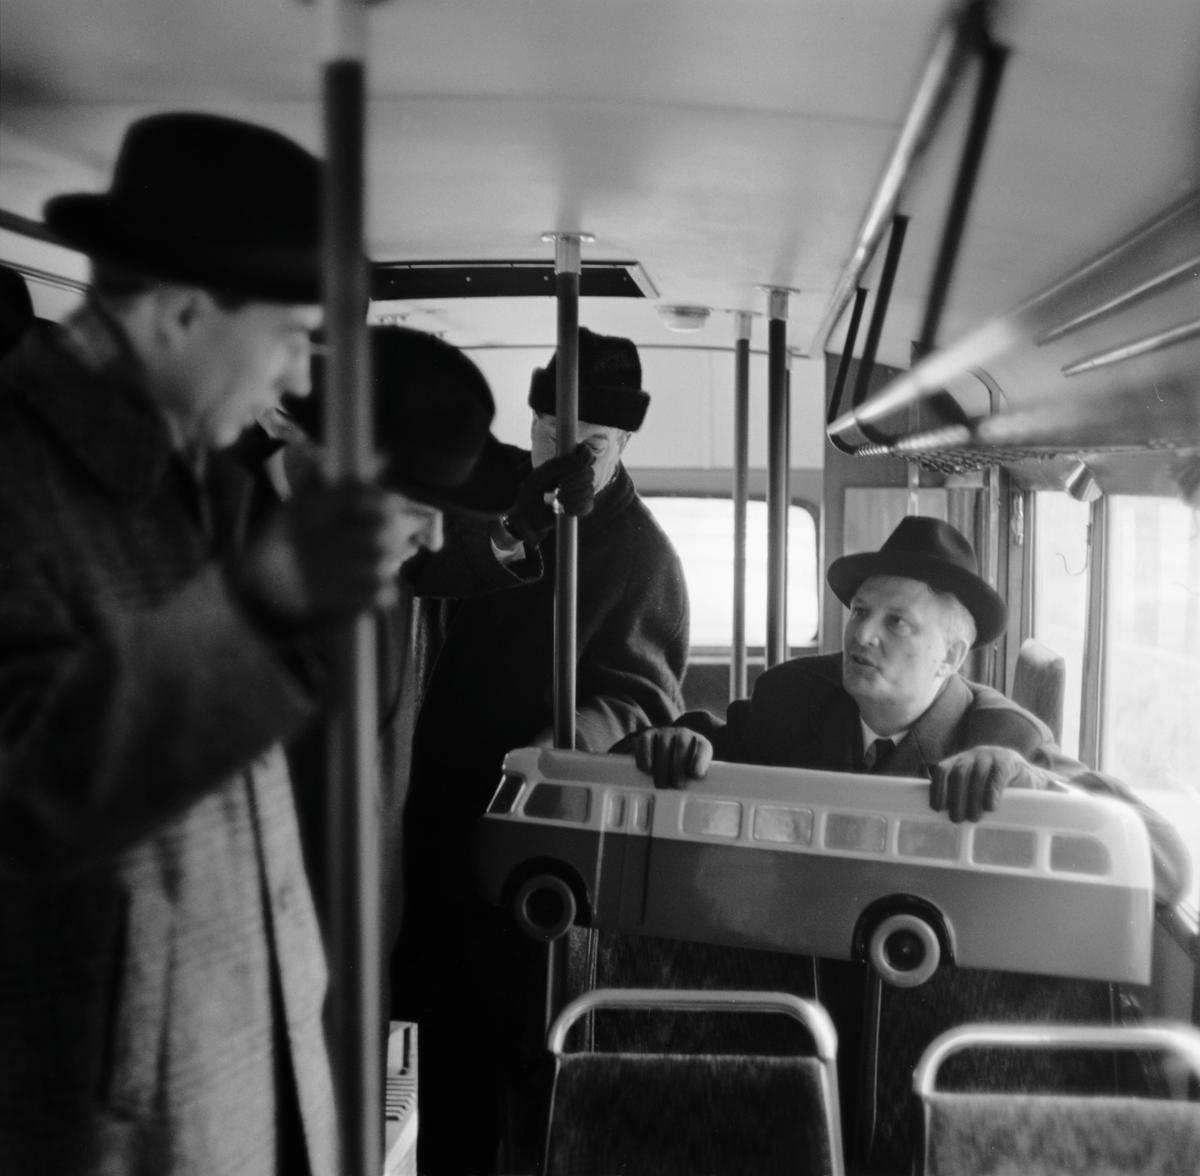 Visning av vägbussar, Klarabergsviadukten. Generaldirektör Erik Uppmark håller i en modell av bussen.